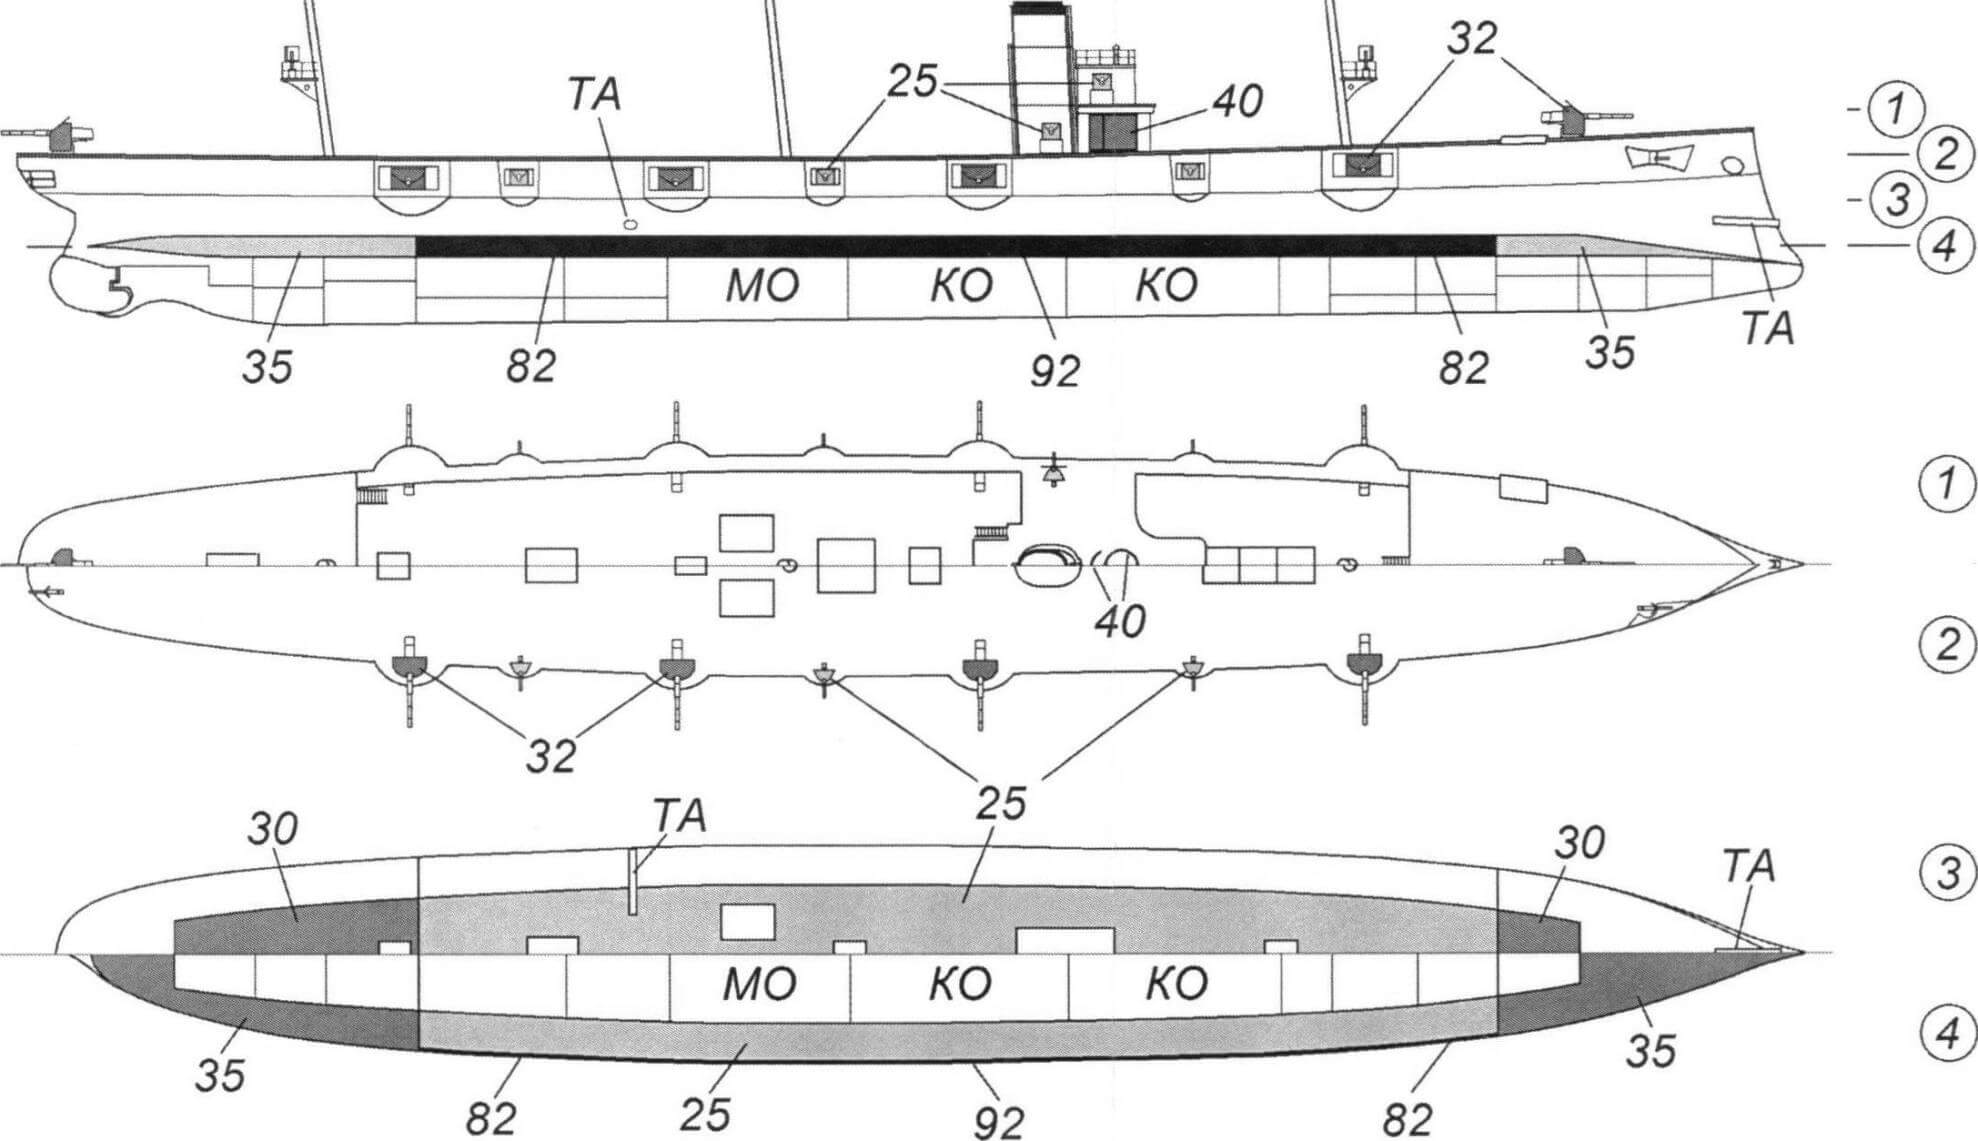 Схема бронирования крейсера «Тиёда» с указанием толщин брони в миллиметрах (реконструкция Вячеслава Филипова).МО - машинное отделение, КО - котельное отделение, ТА - торпедный аппарат